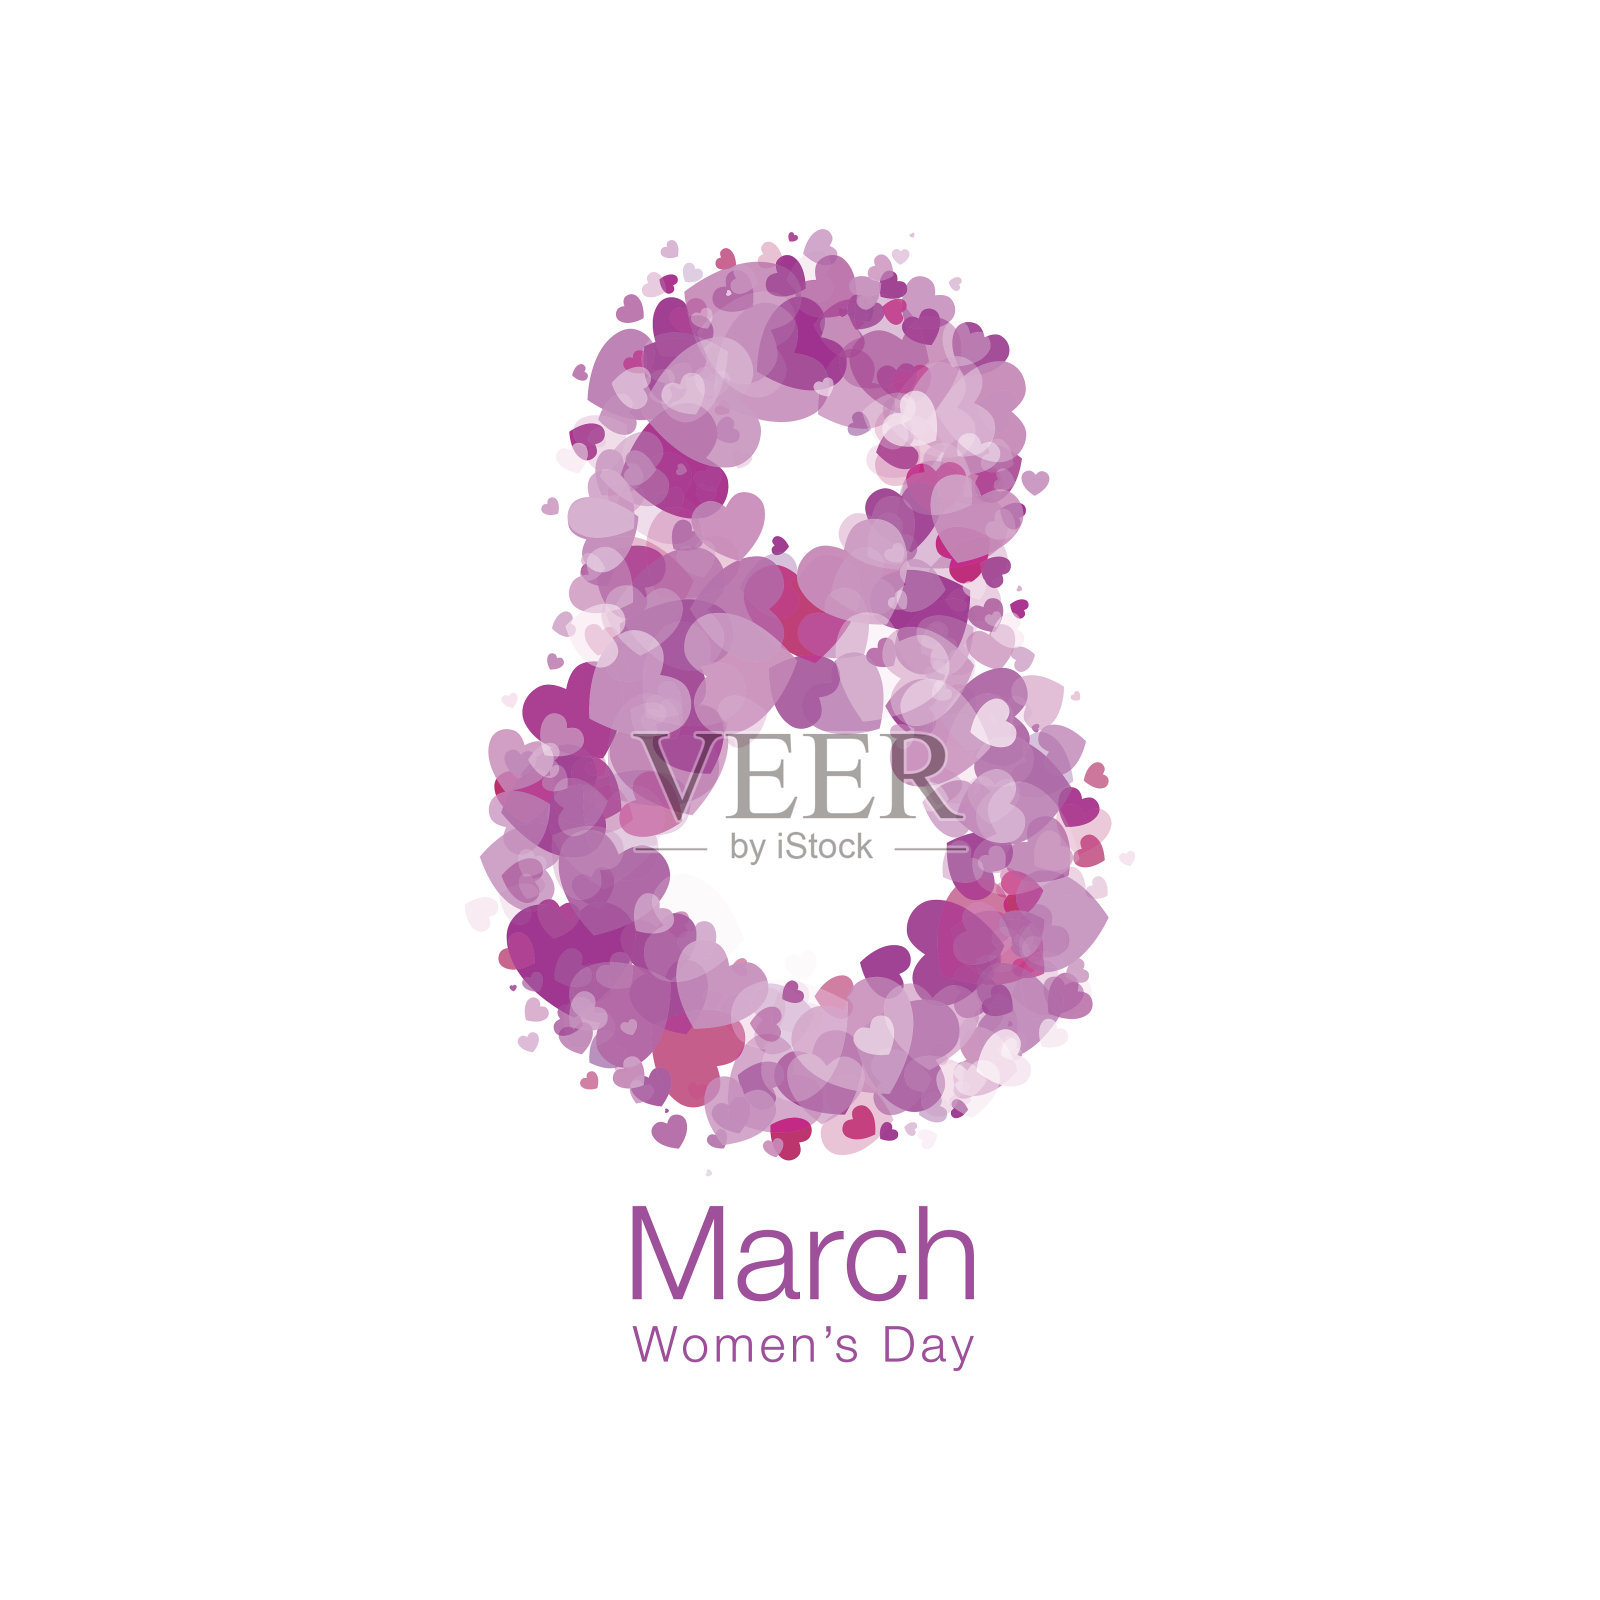 3月8日-妇女节贺卡灯模板设计。白色背景上孤立的亮红紫粉心形象征着国际妇女节。矢量插图。设计模板素材